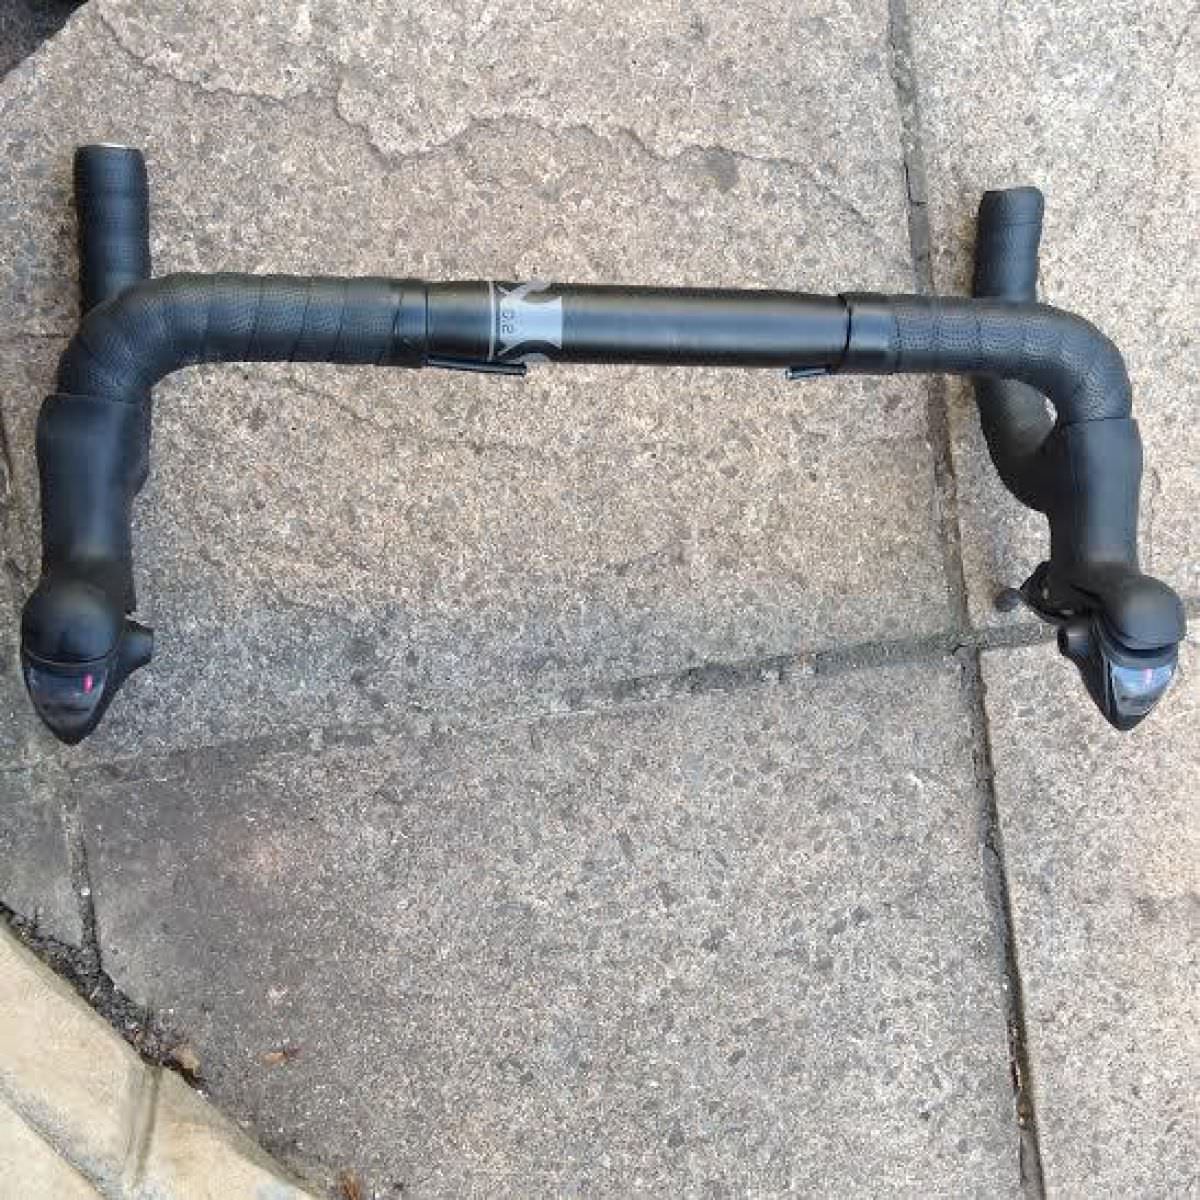 Bike dropped handlebars